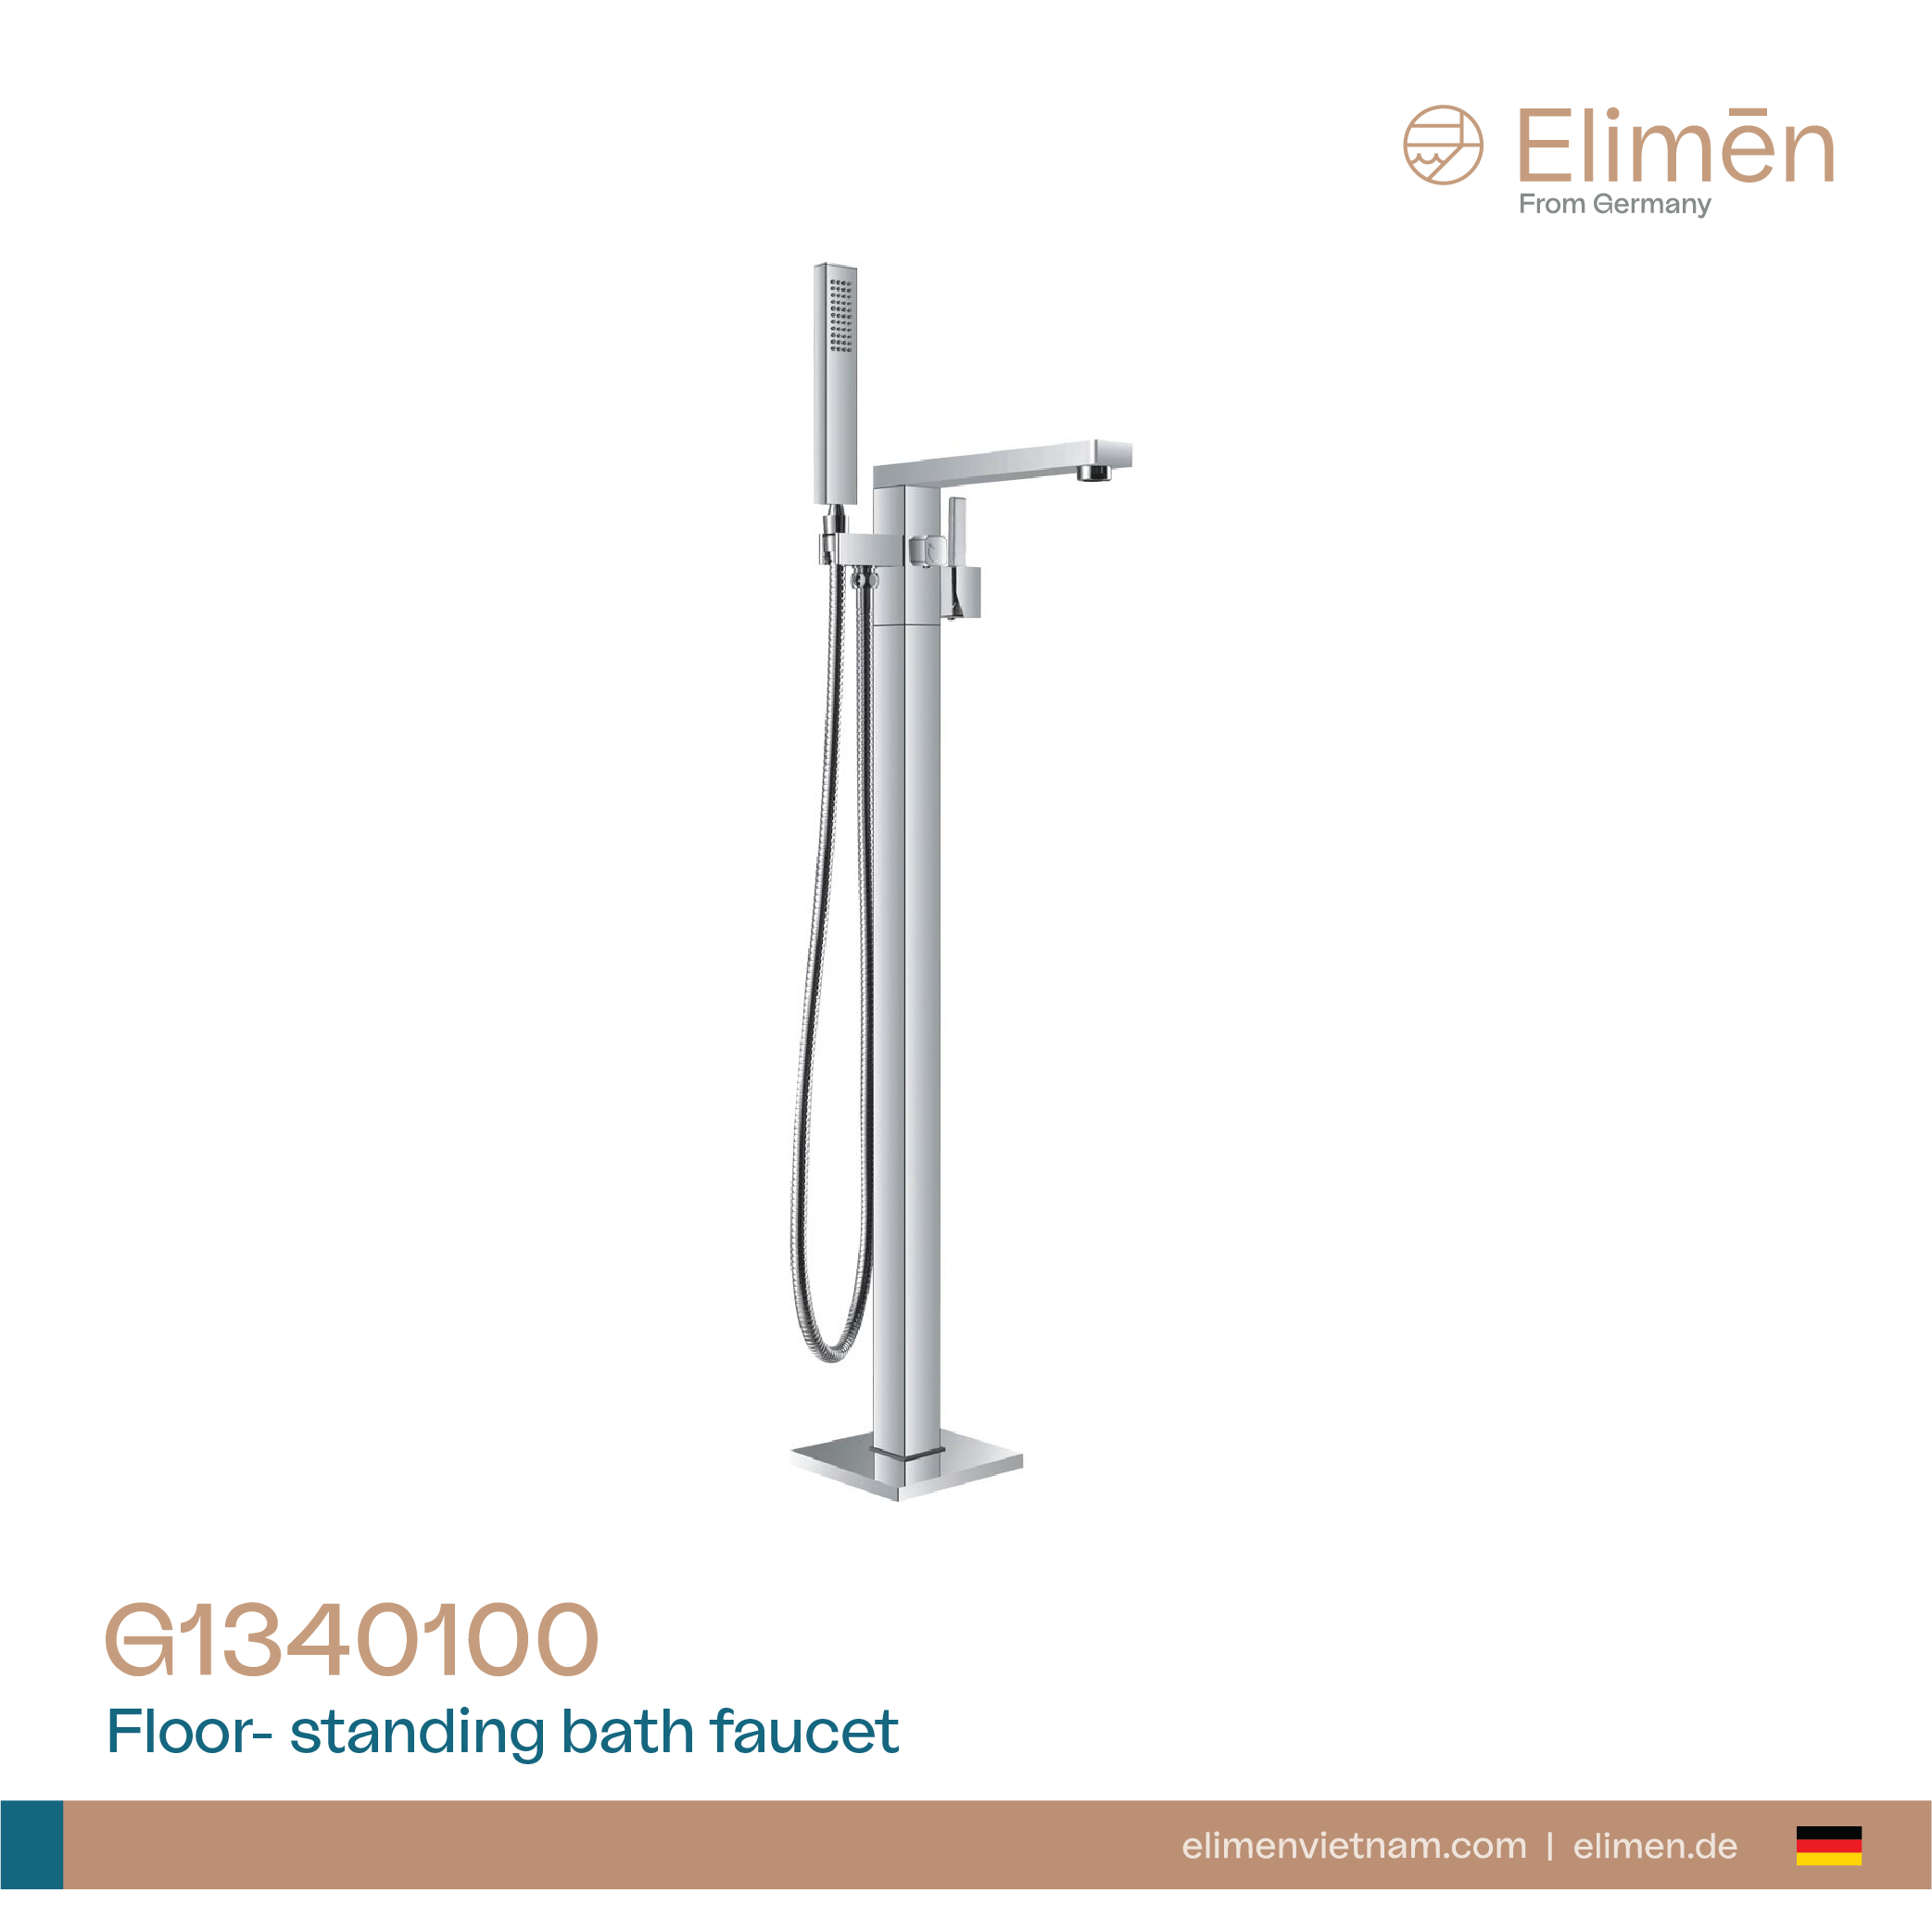 Elimen floor standing bath faucet - Code G1340100